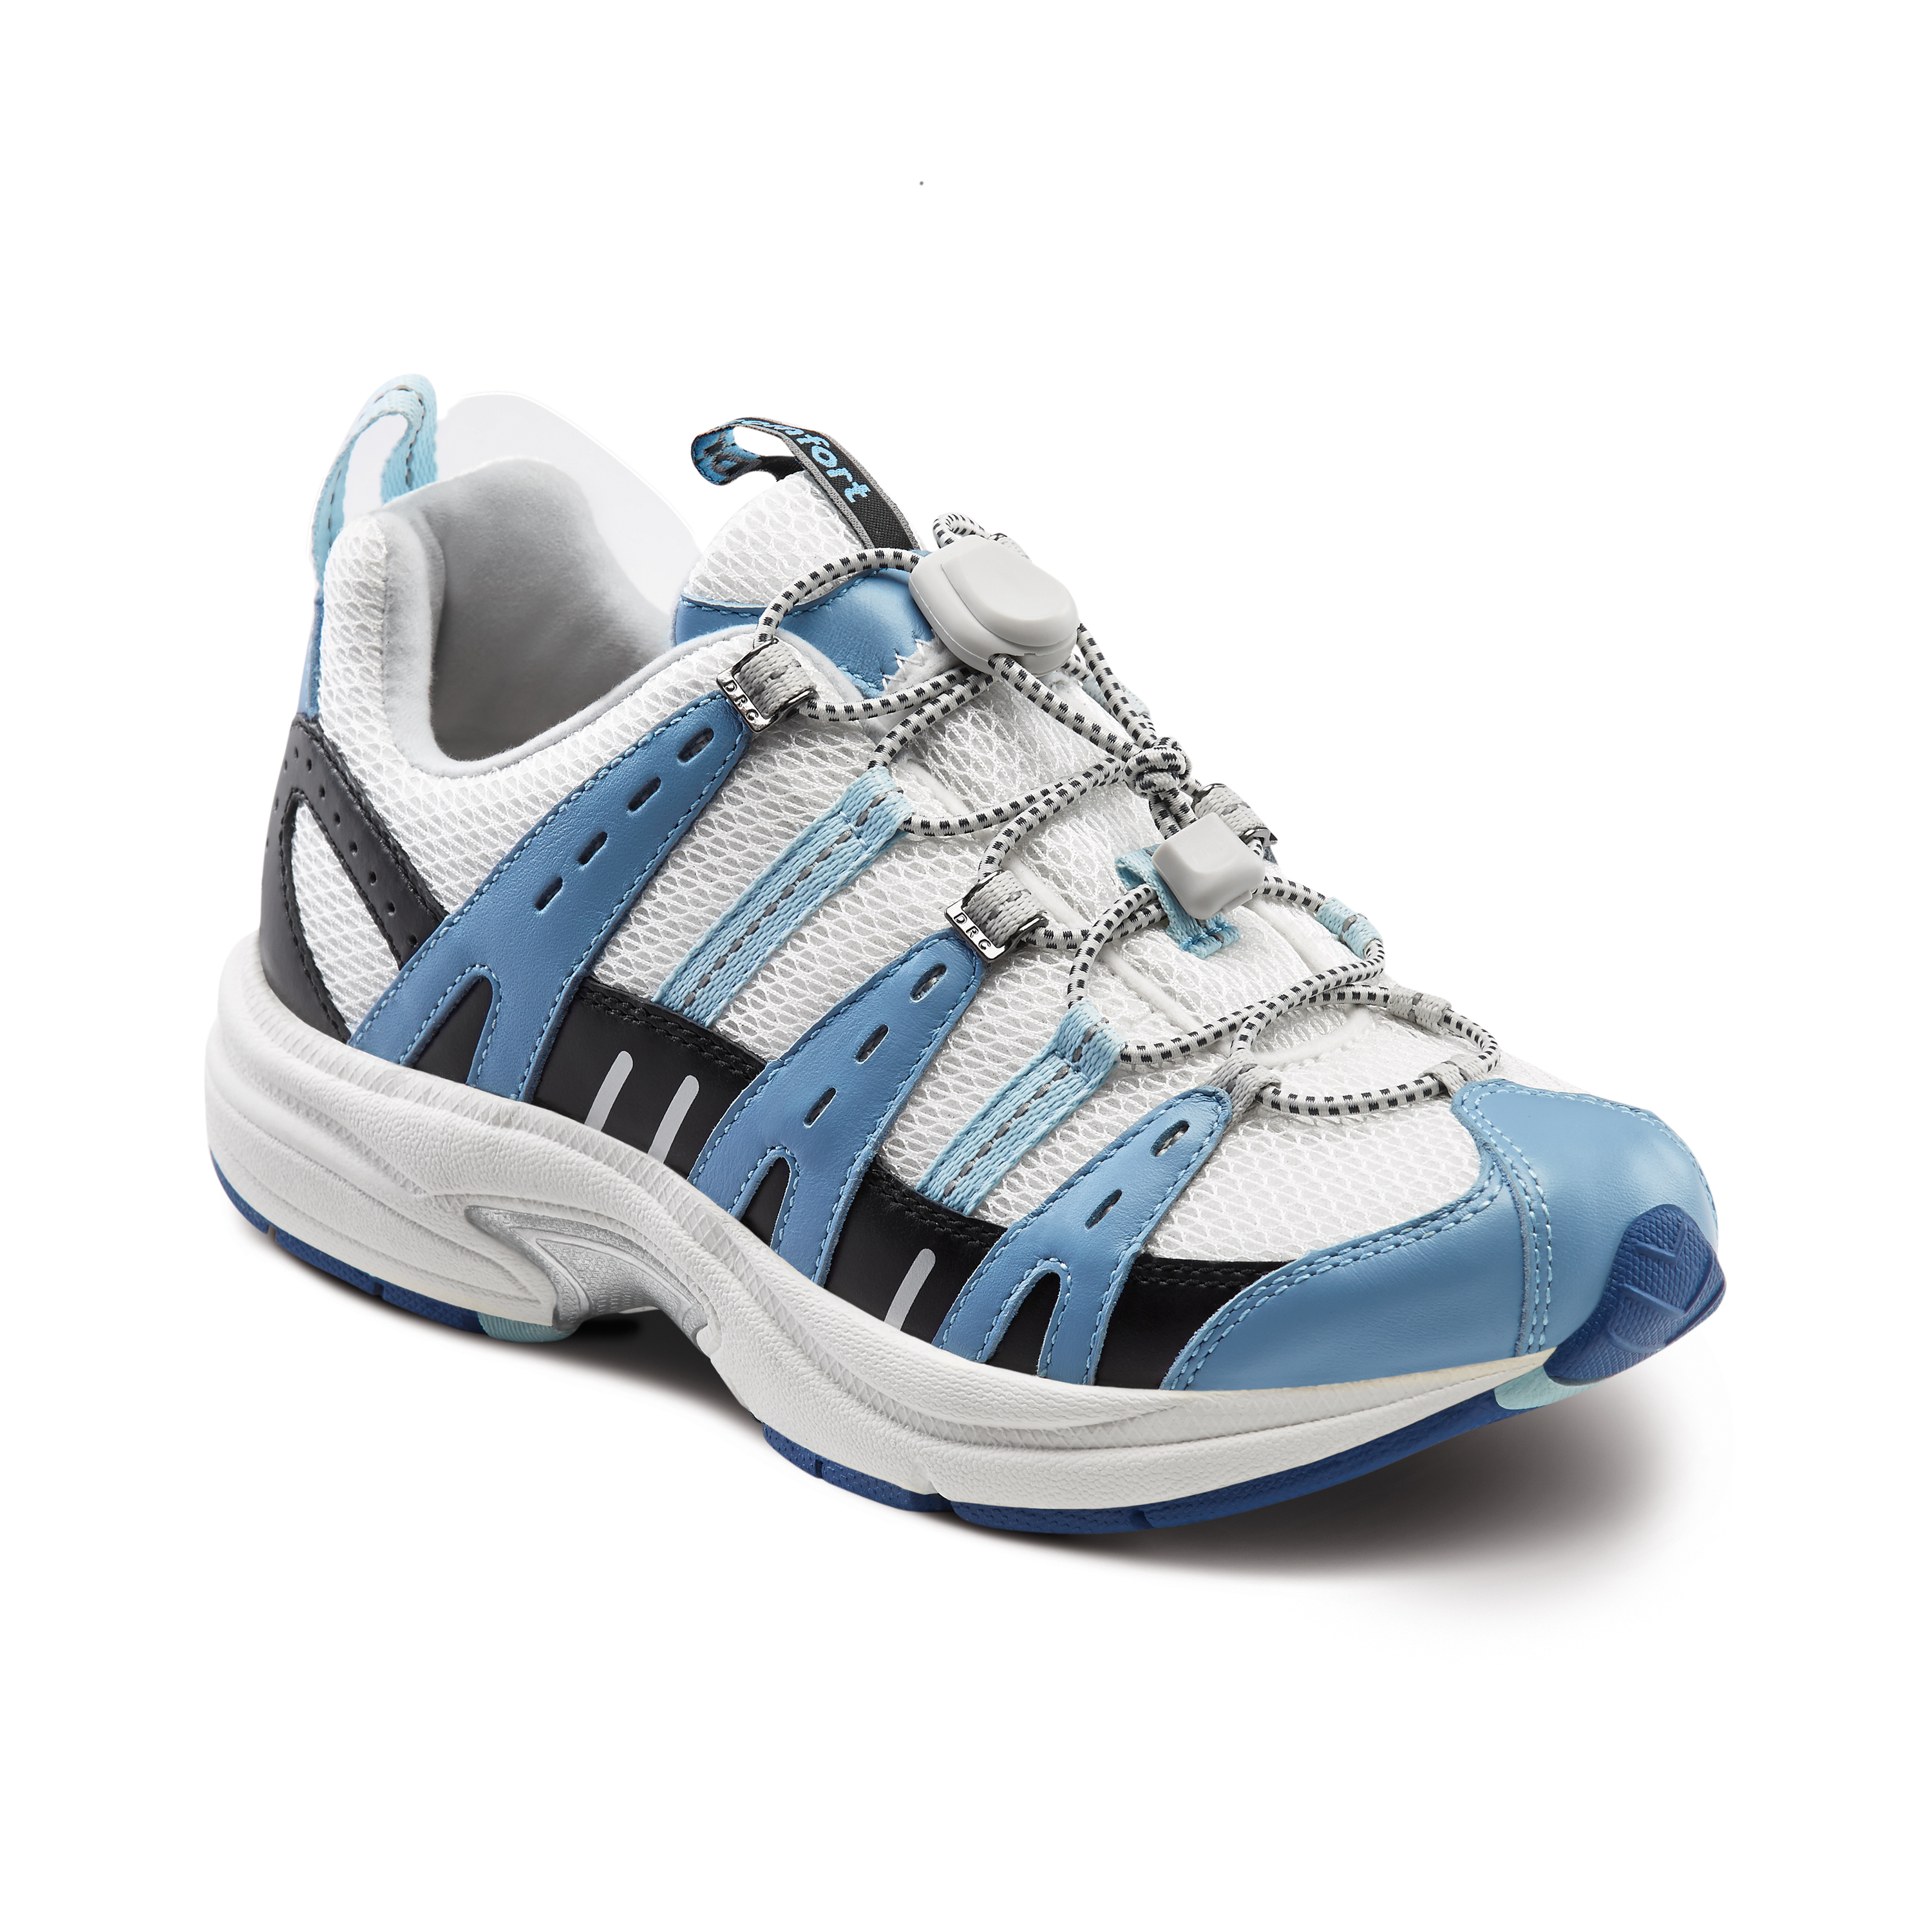 Produktbild DR. COMFORT® Refresh blau, Orthopädische Schuhe, Besonders weicher und leichter Freizeitschuh